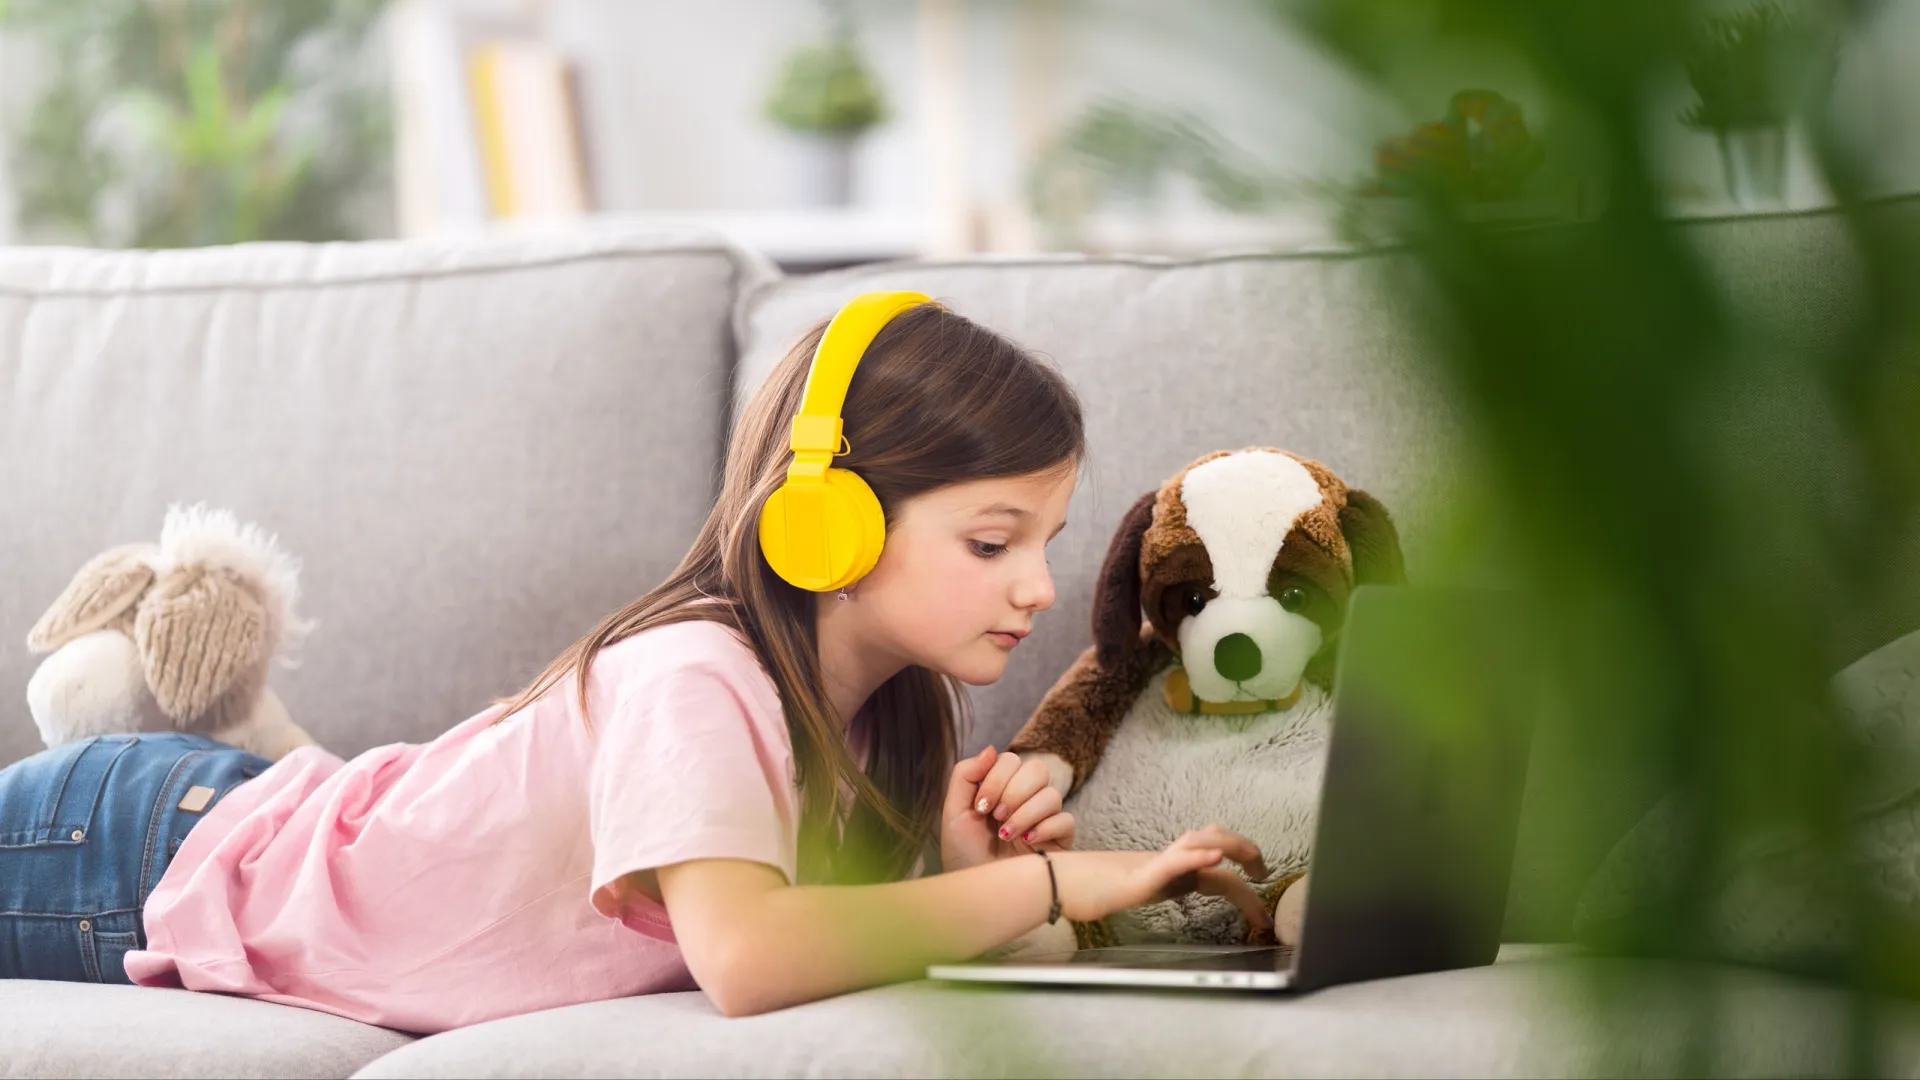 Функция родительского контроля надежно защищает детей от непристойного контента в интернете. Фото: Egoitz Bengoetxea/Shutterstock/Fotodom